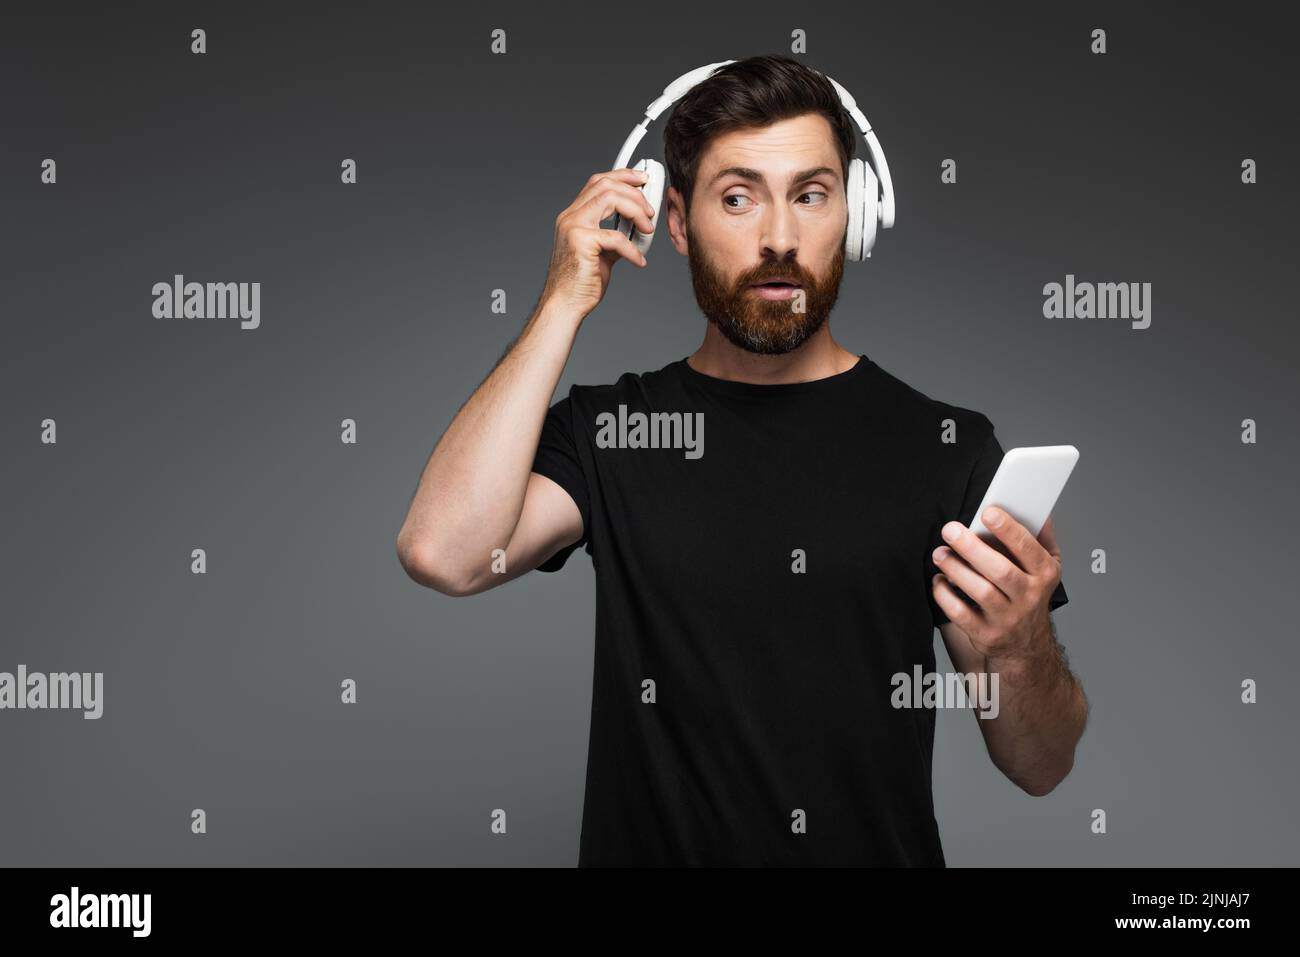 hombre curioso que ajusta los auriculares inalámbricos y utiliza el smartphone aislado sobre una imagen de stock gris Foto de stock